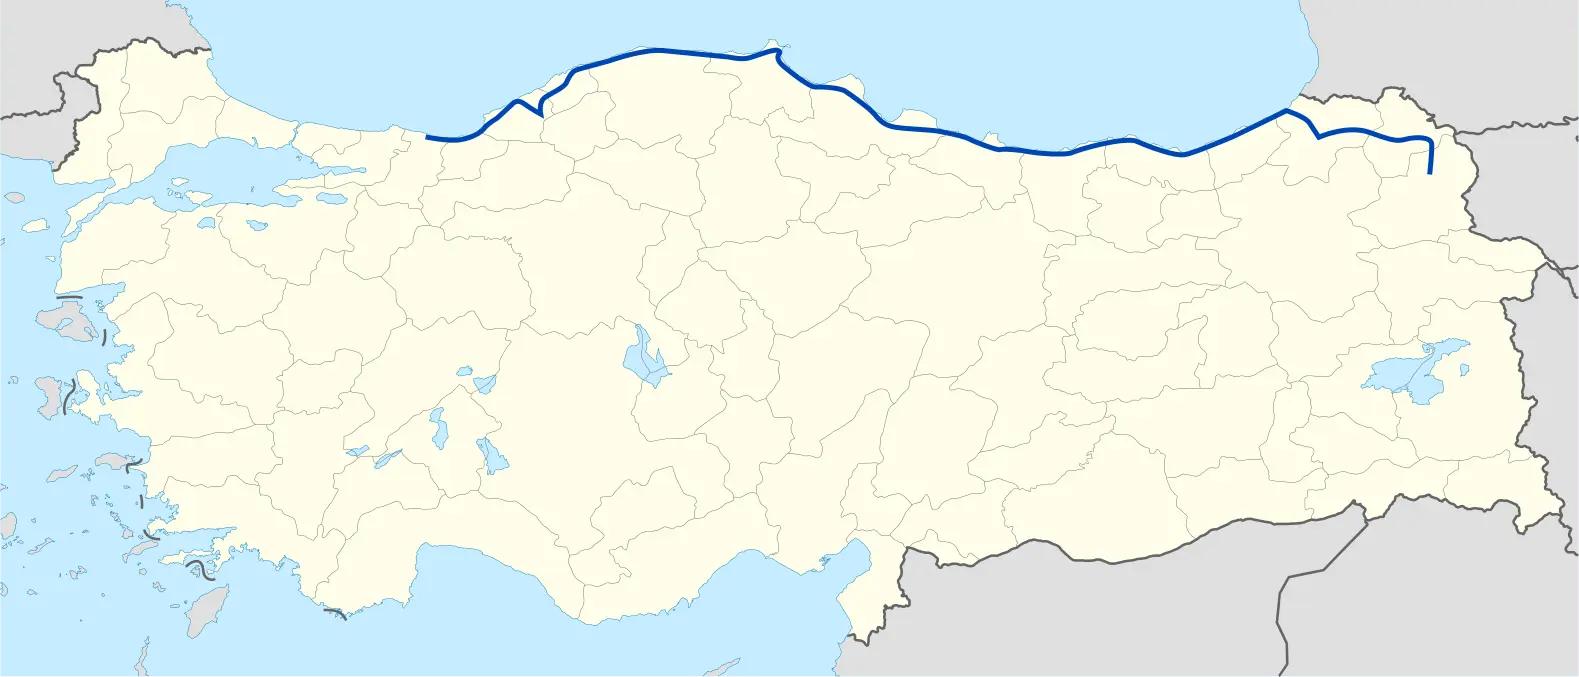 Carte de la Turquie avec le tracé de l'autoroute, on voit qu'elle longe presque toutr la côte nord de la péninsule anatolienne, le long de la mer Noire.